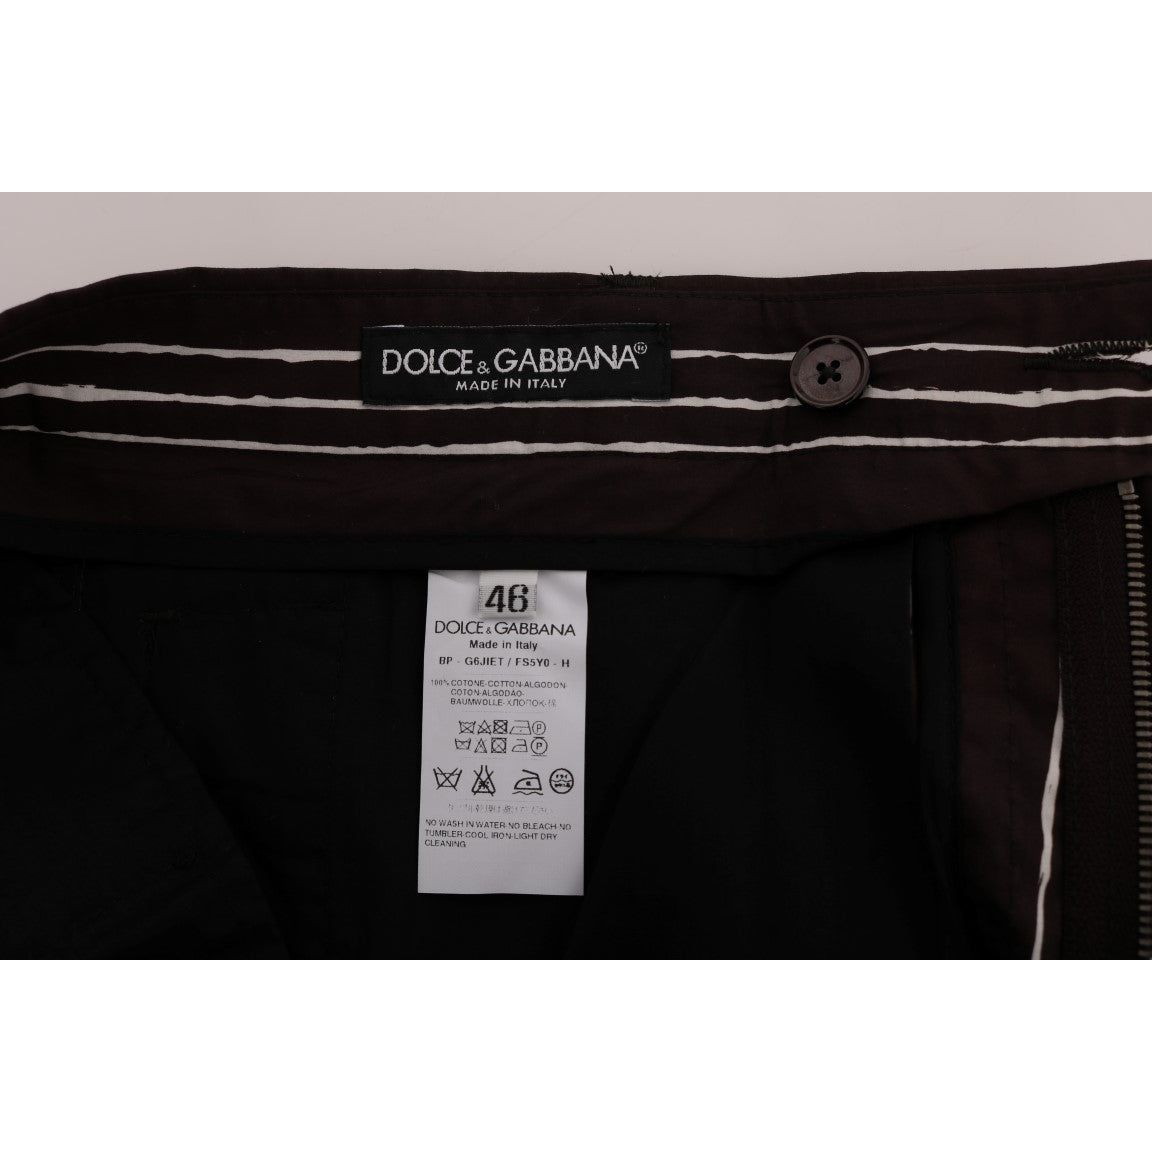 Dolce & GabbanaBordeaux Striped Cotton Knee High ShortsMcRichard Designer Brands£249.00